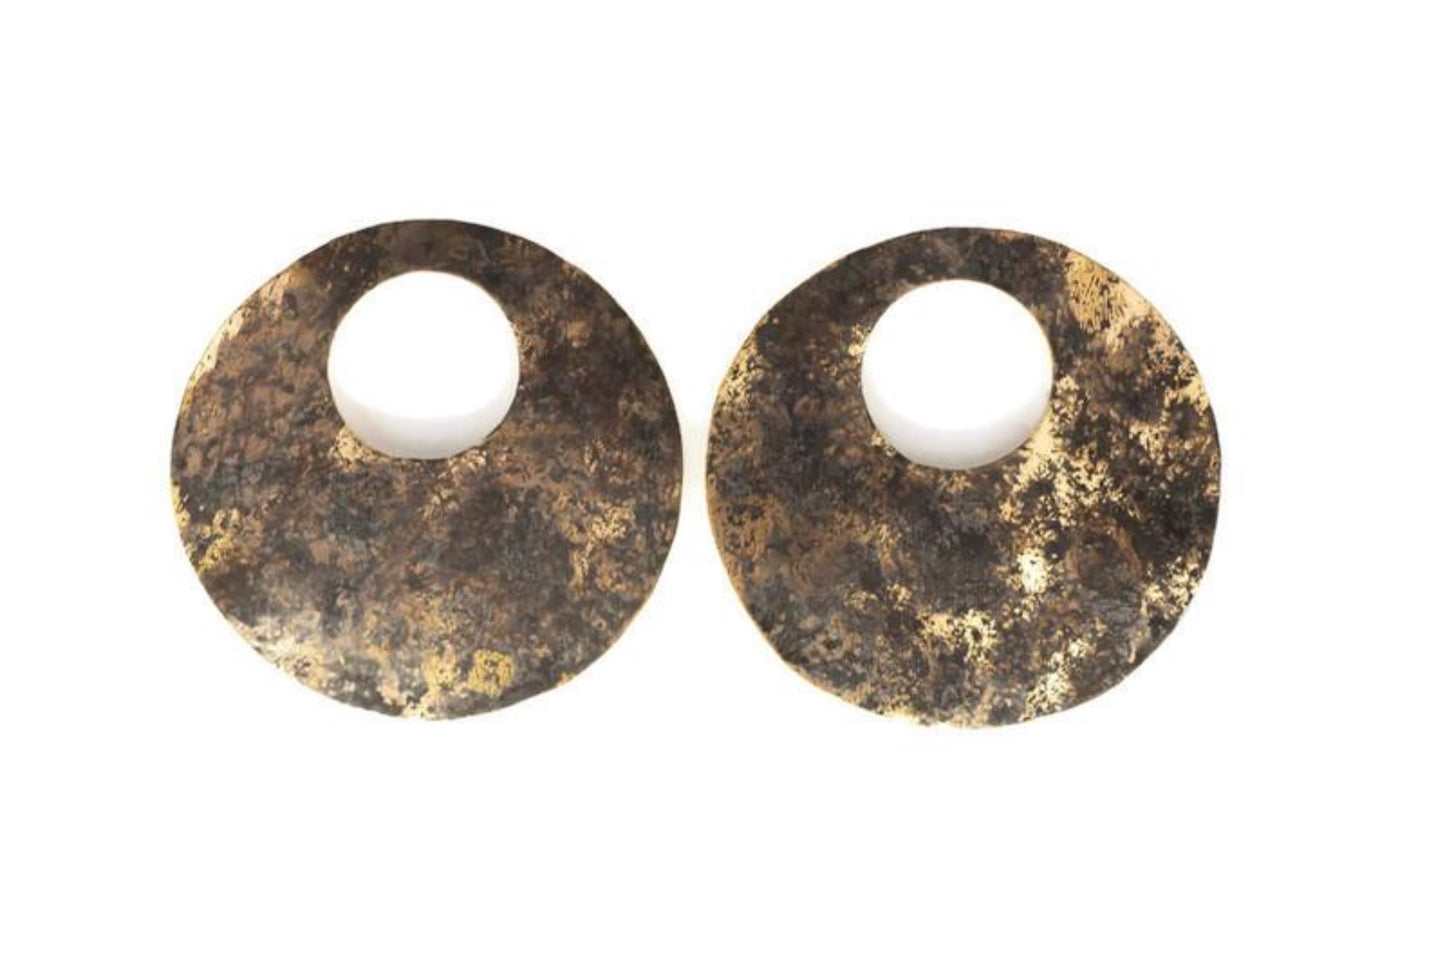  Oxidised brass earrings | Yellow - Black Full Moon Earrings - CURIUDO